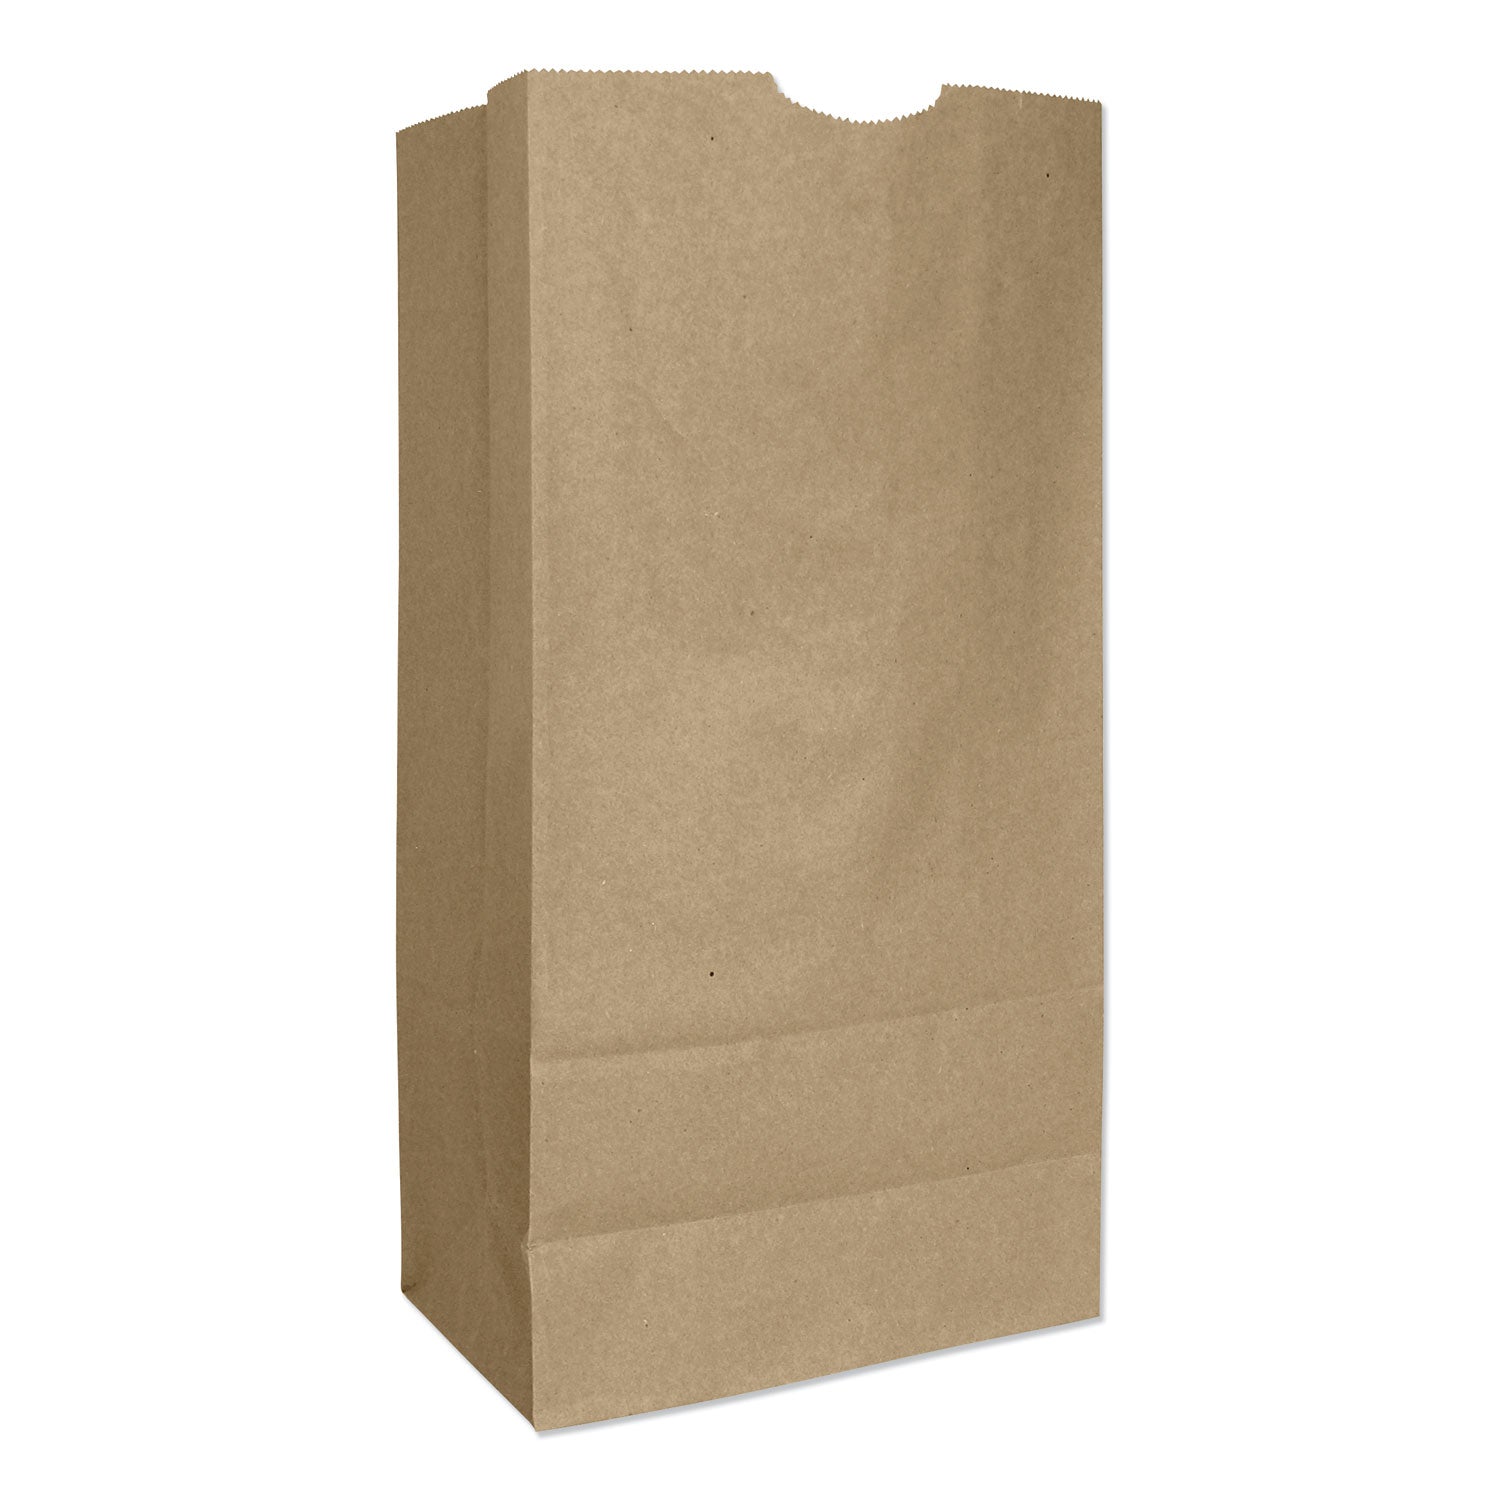 grocery-paper-bags-57-lb-capacity-#16-775-x-481-x-16-kraft-500-bags_baggx16 - 1